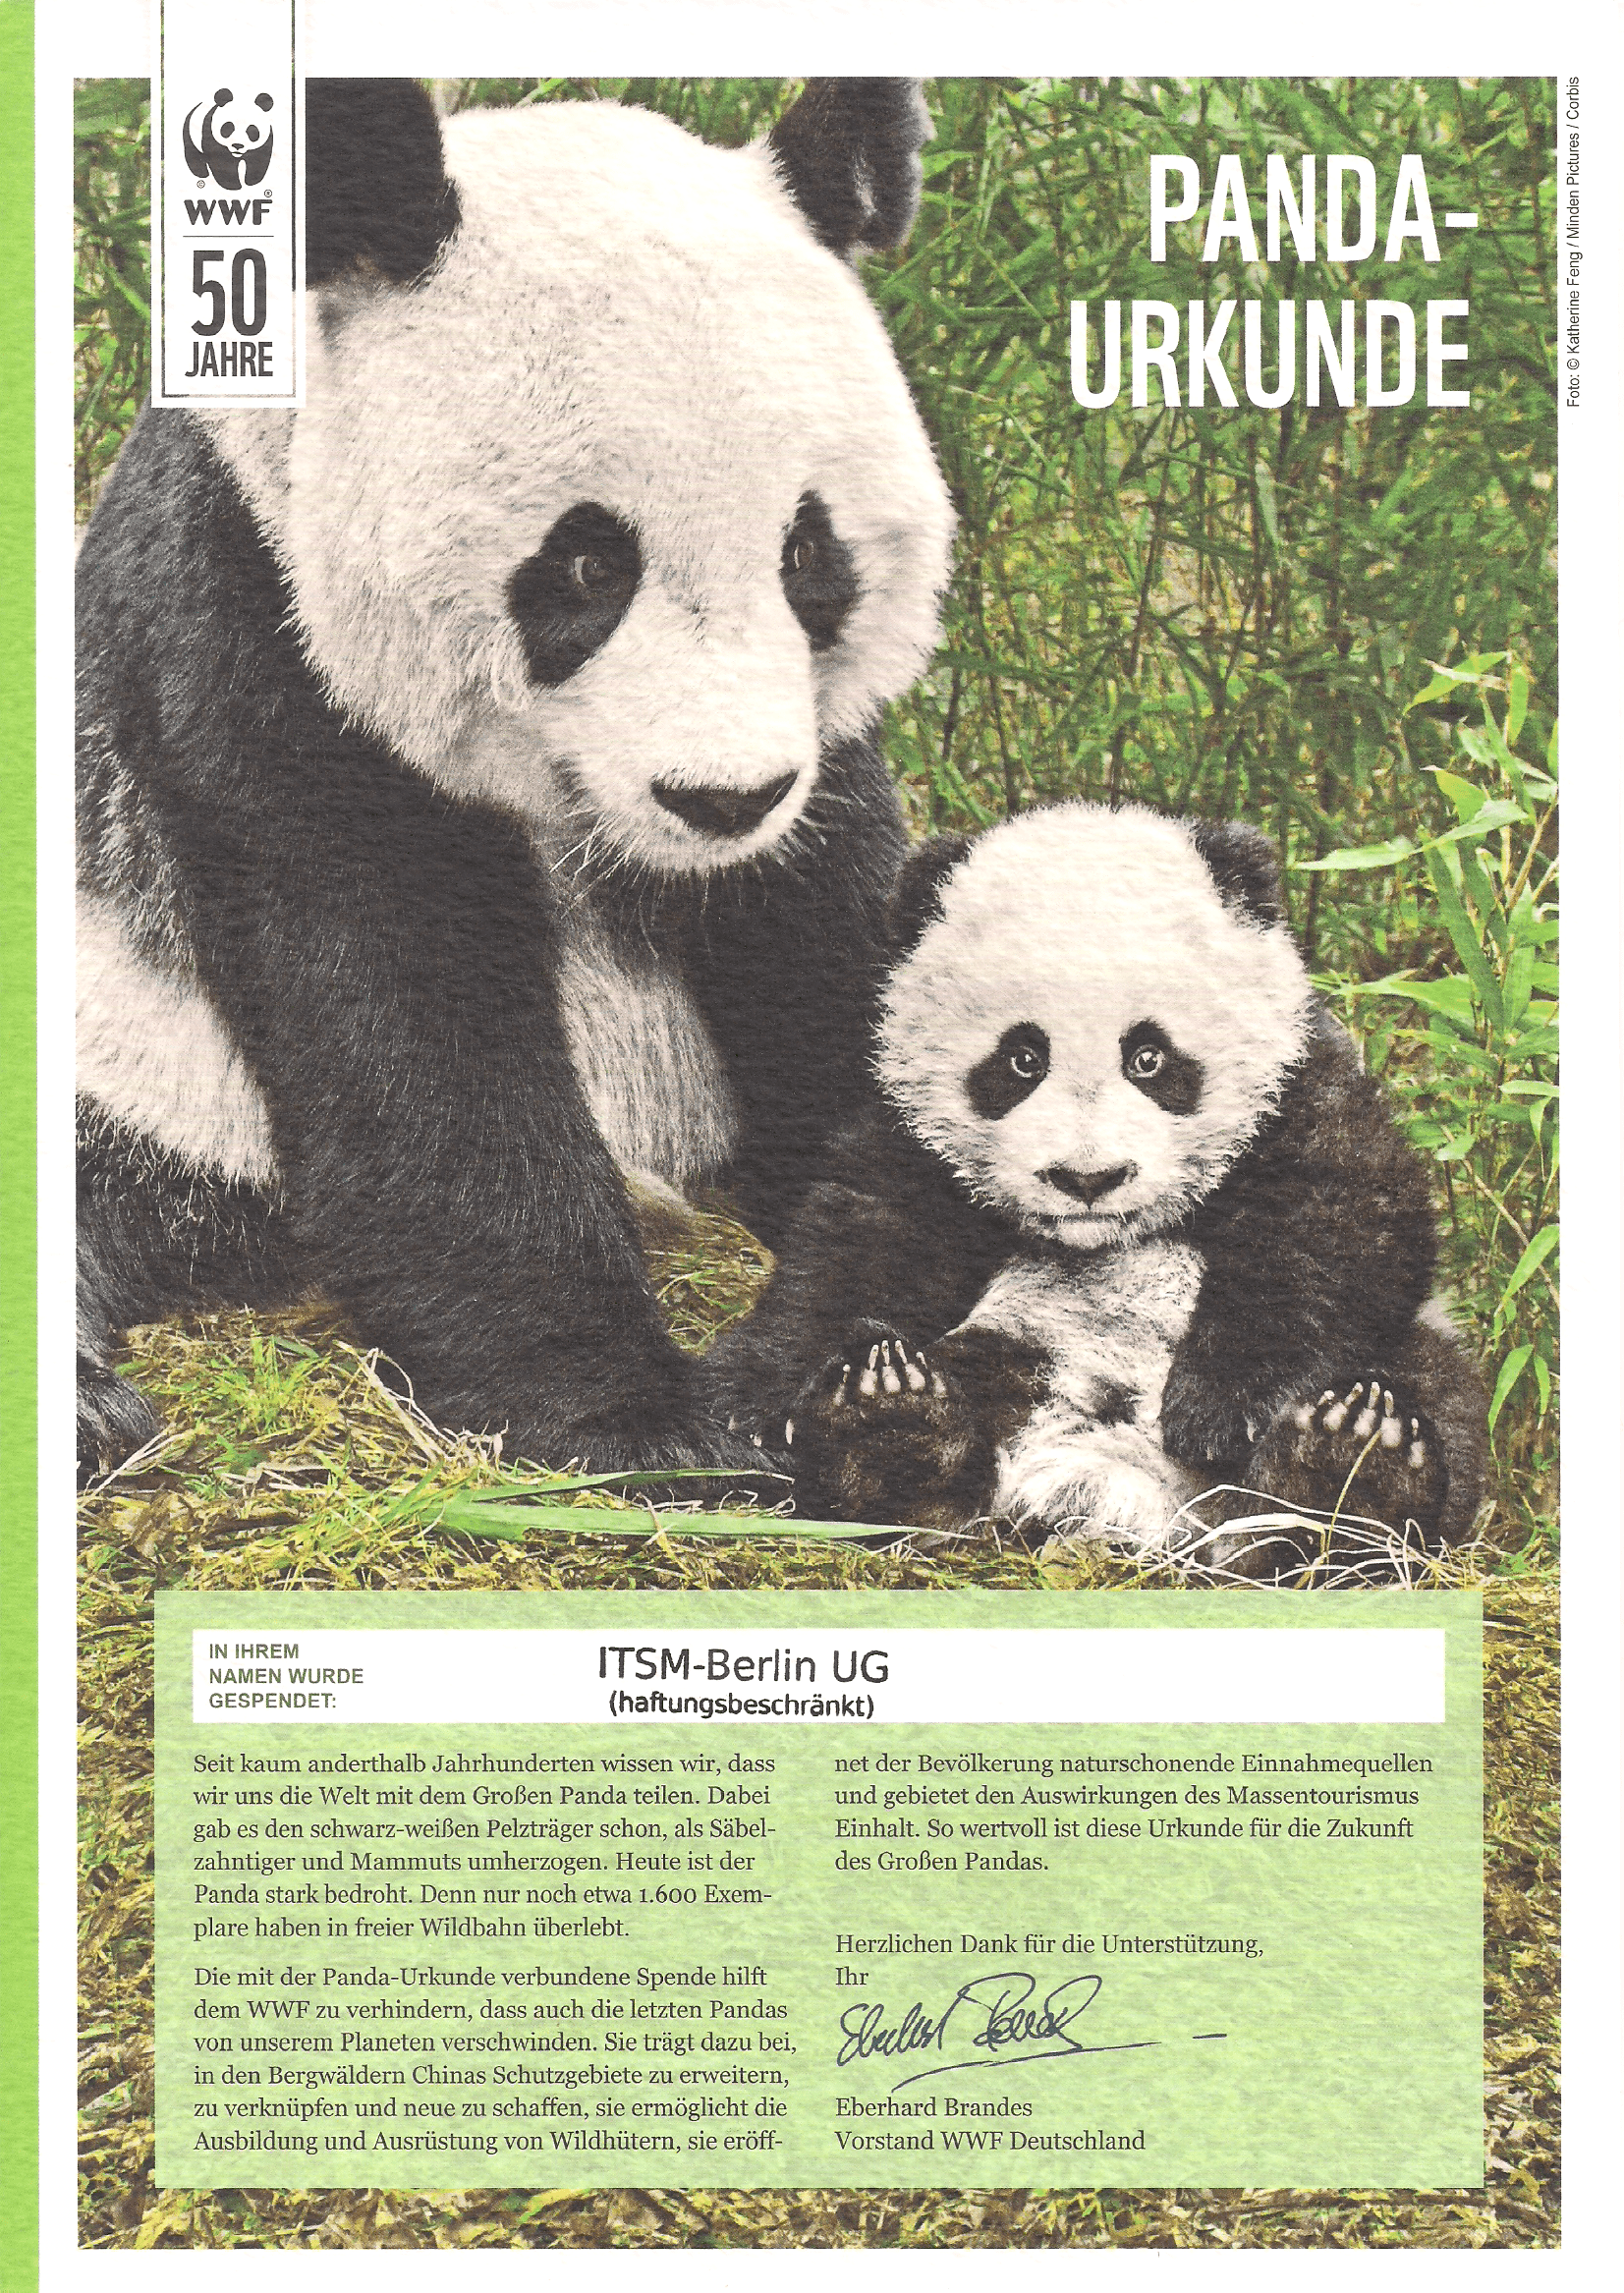 Urkunde für eine Spende zum Schutz der Pandas